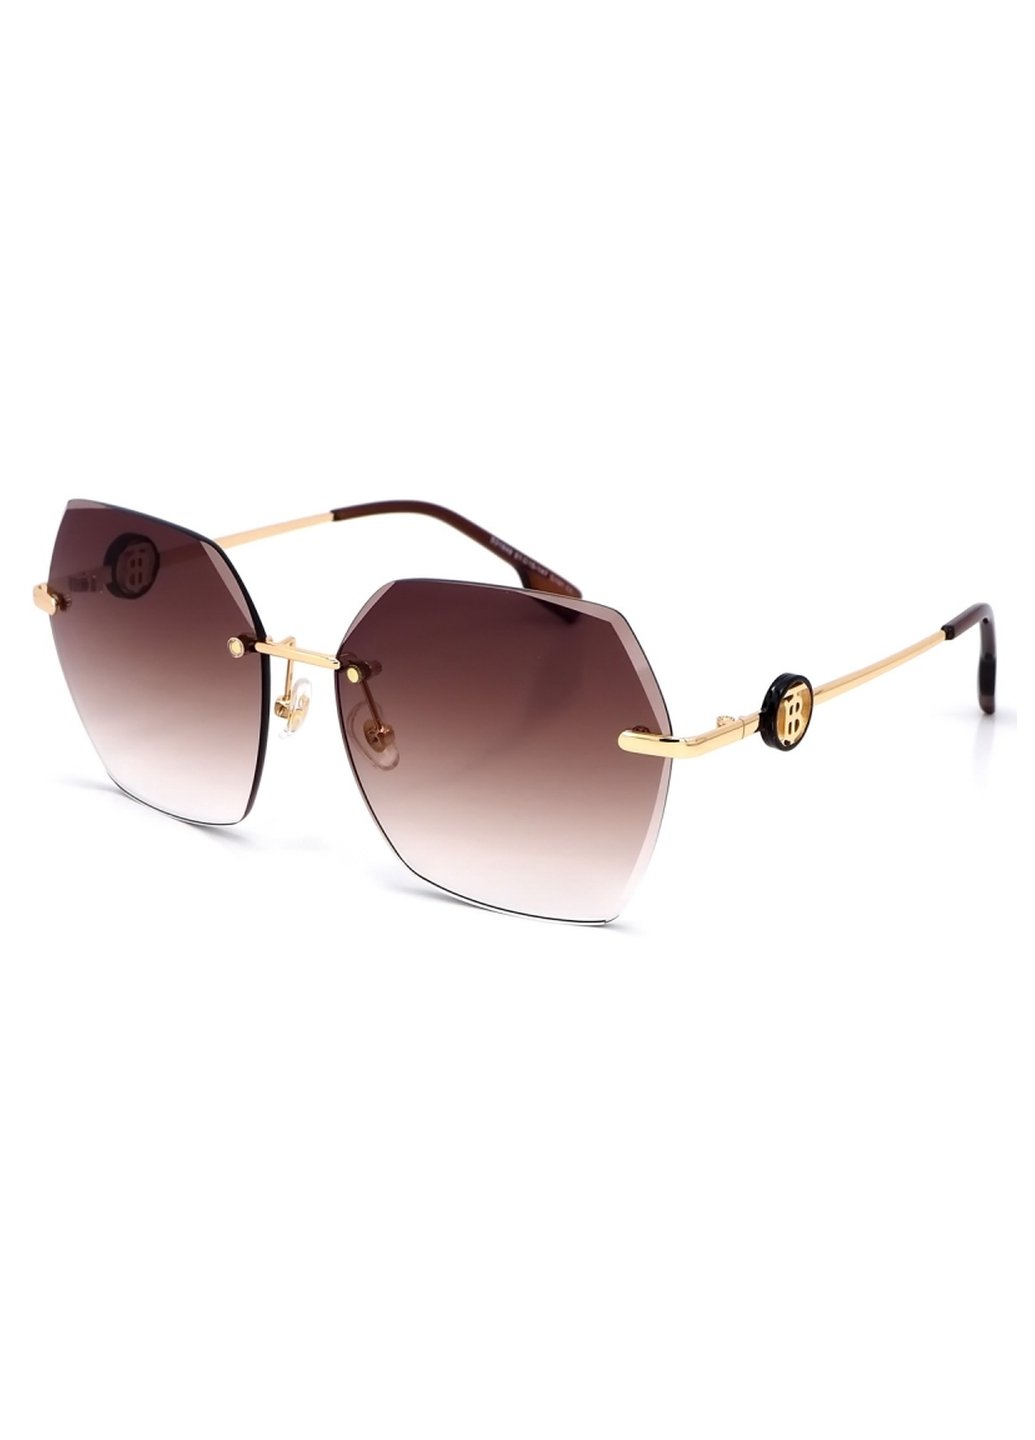 Купить Женские солнцезащитные очки Merlini с поляризацией S31848 117120 - Золотистый в интернет-магазине